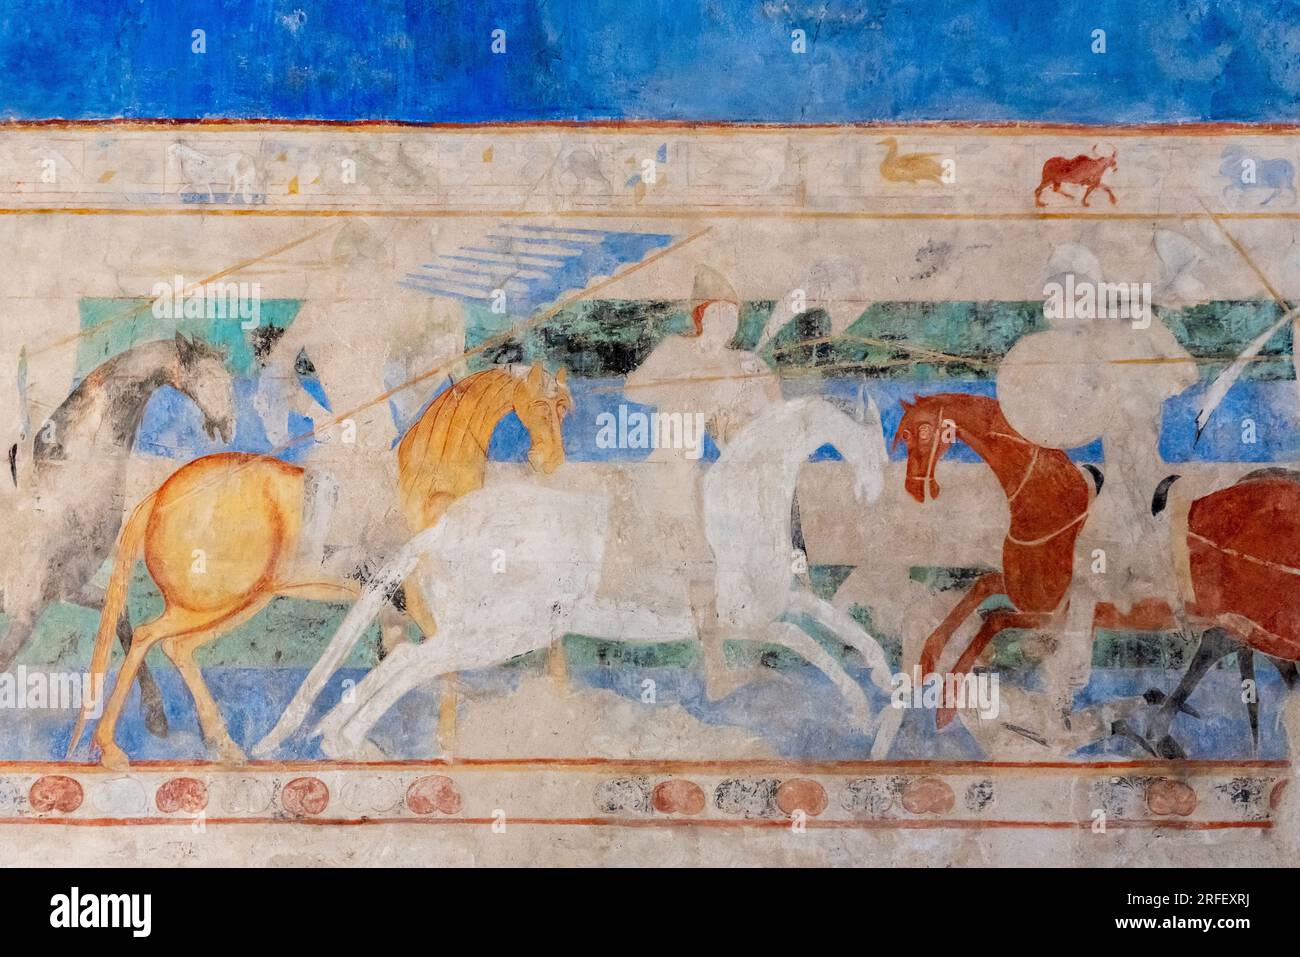 Francia, Aude, Carcassonne, città medievale dichiarata Patrimonio dell'Umanità dall'UNESCO, dipinti murali del tardo XII secolo raffiguranti le battaglie tra Franchi e Saraceni Foto Stock